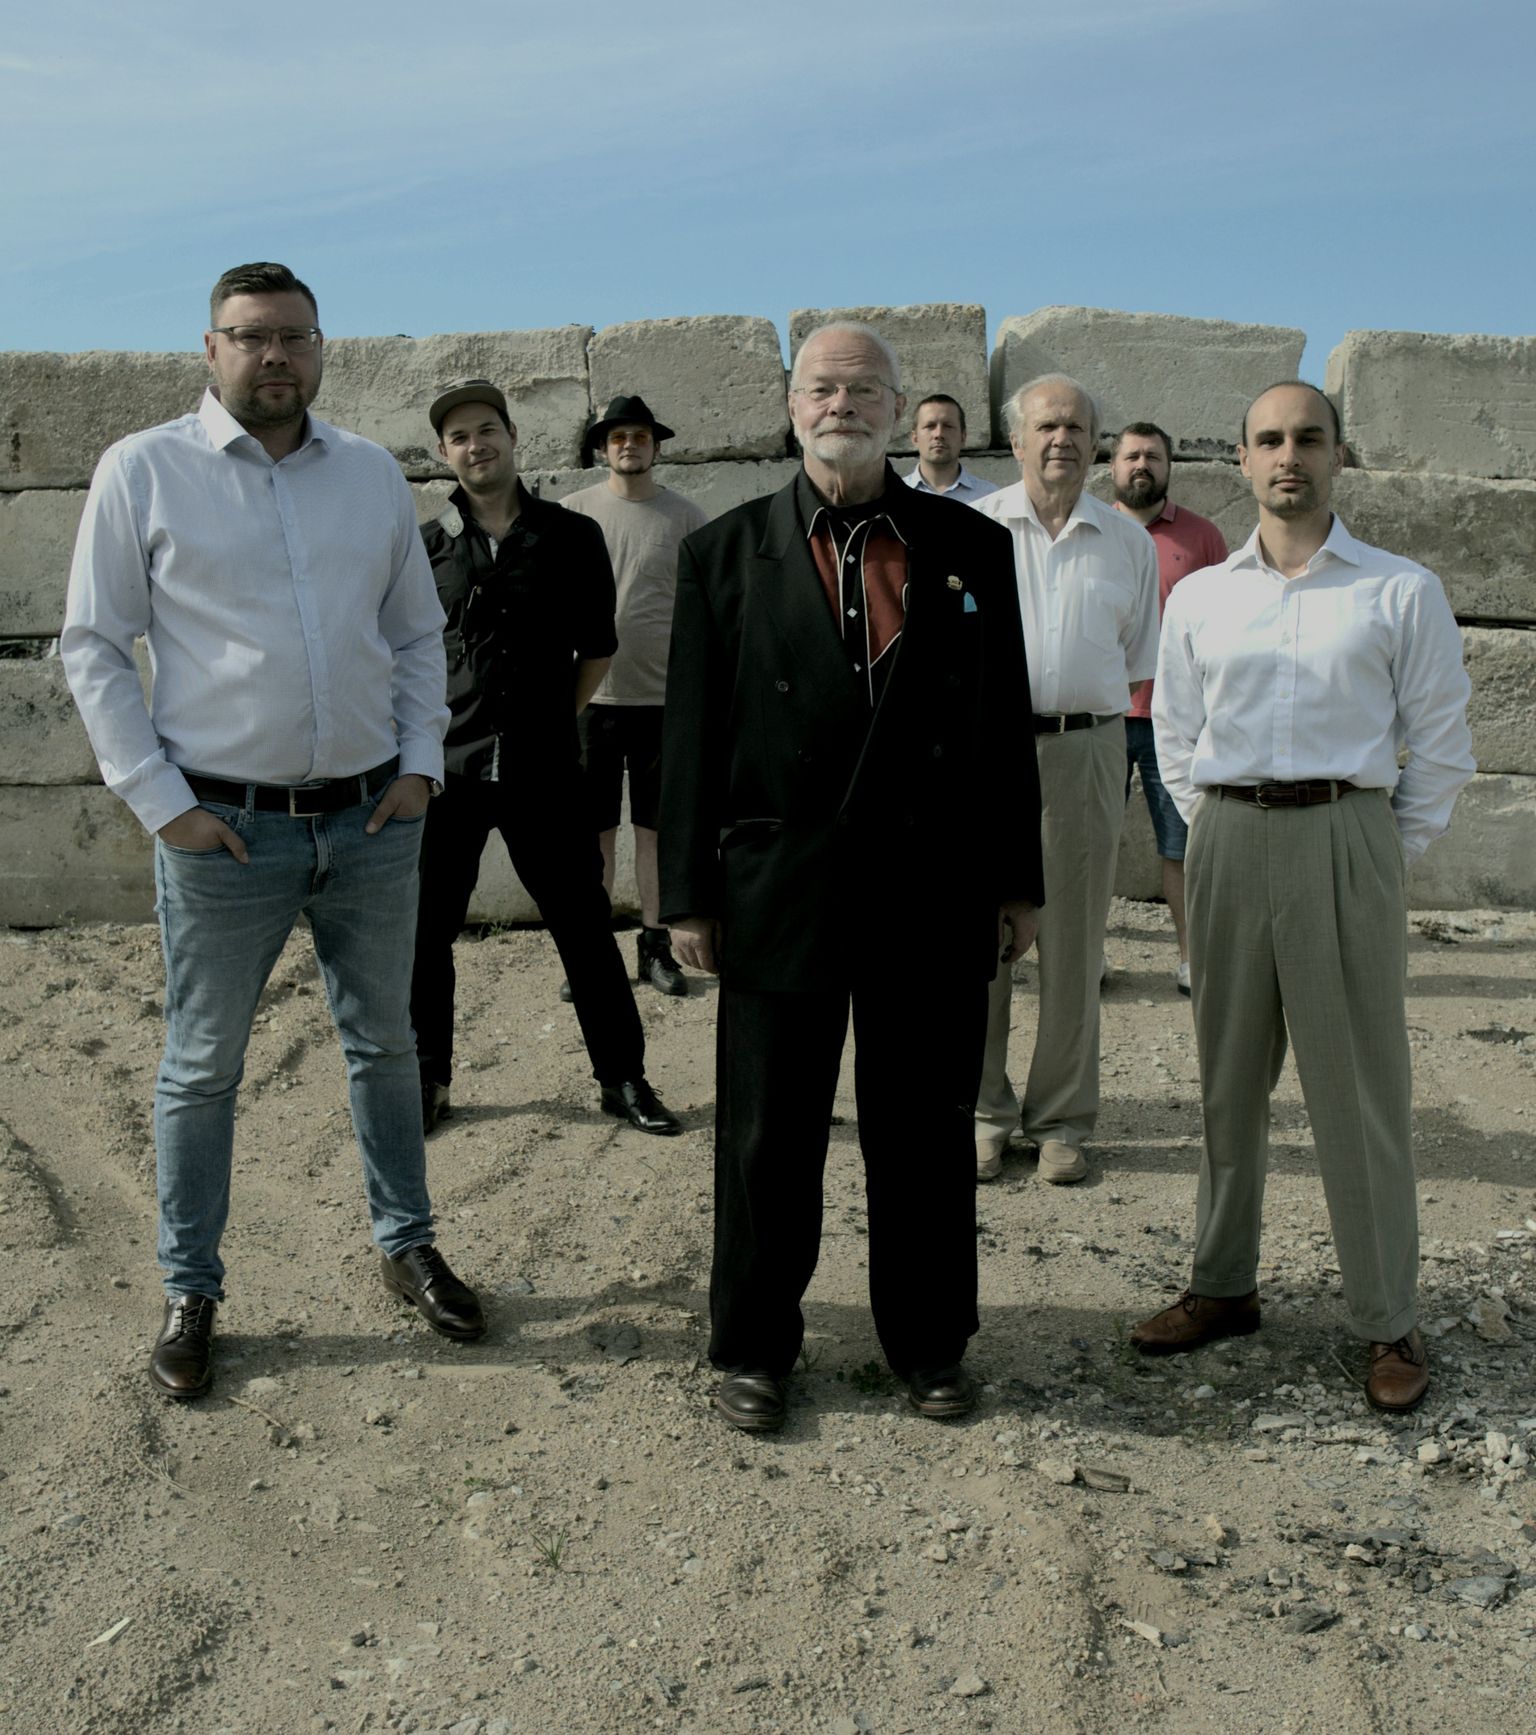 Новая группа "Esco Compton & The Plastic Knives" впервые предстанет перед публикой в Кохтла-Ярве, но строит планы на будущее - покорить другие города, и не только своей страны.